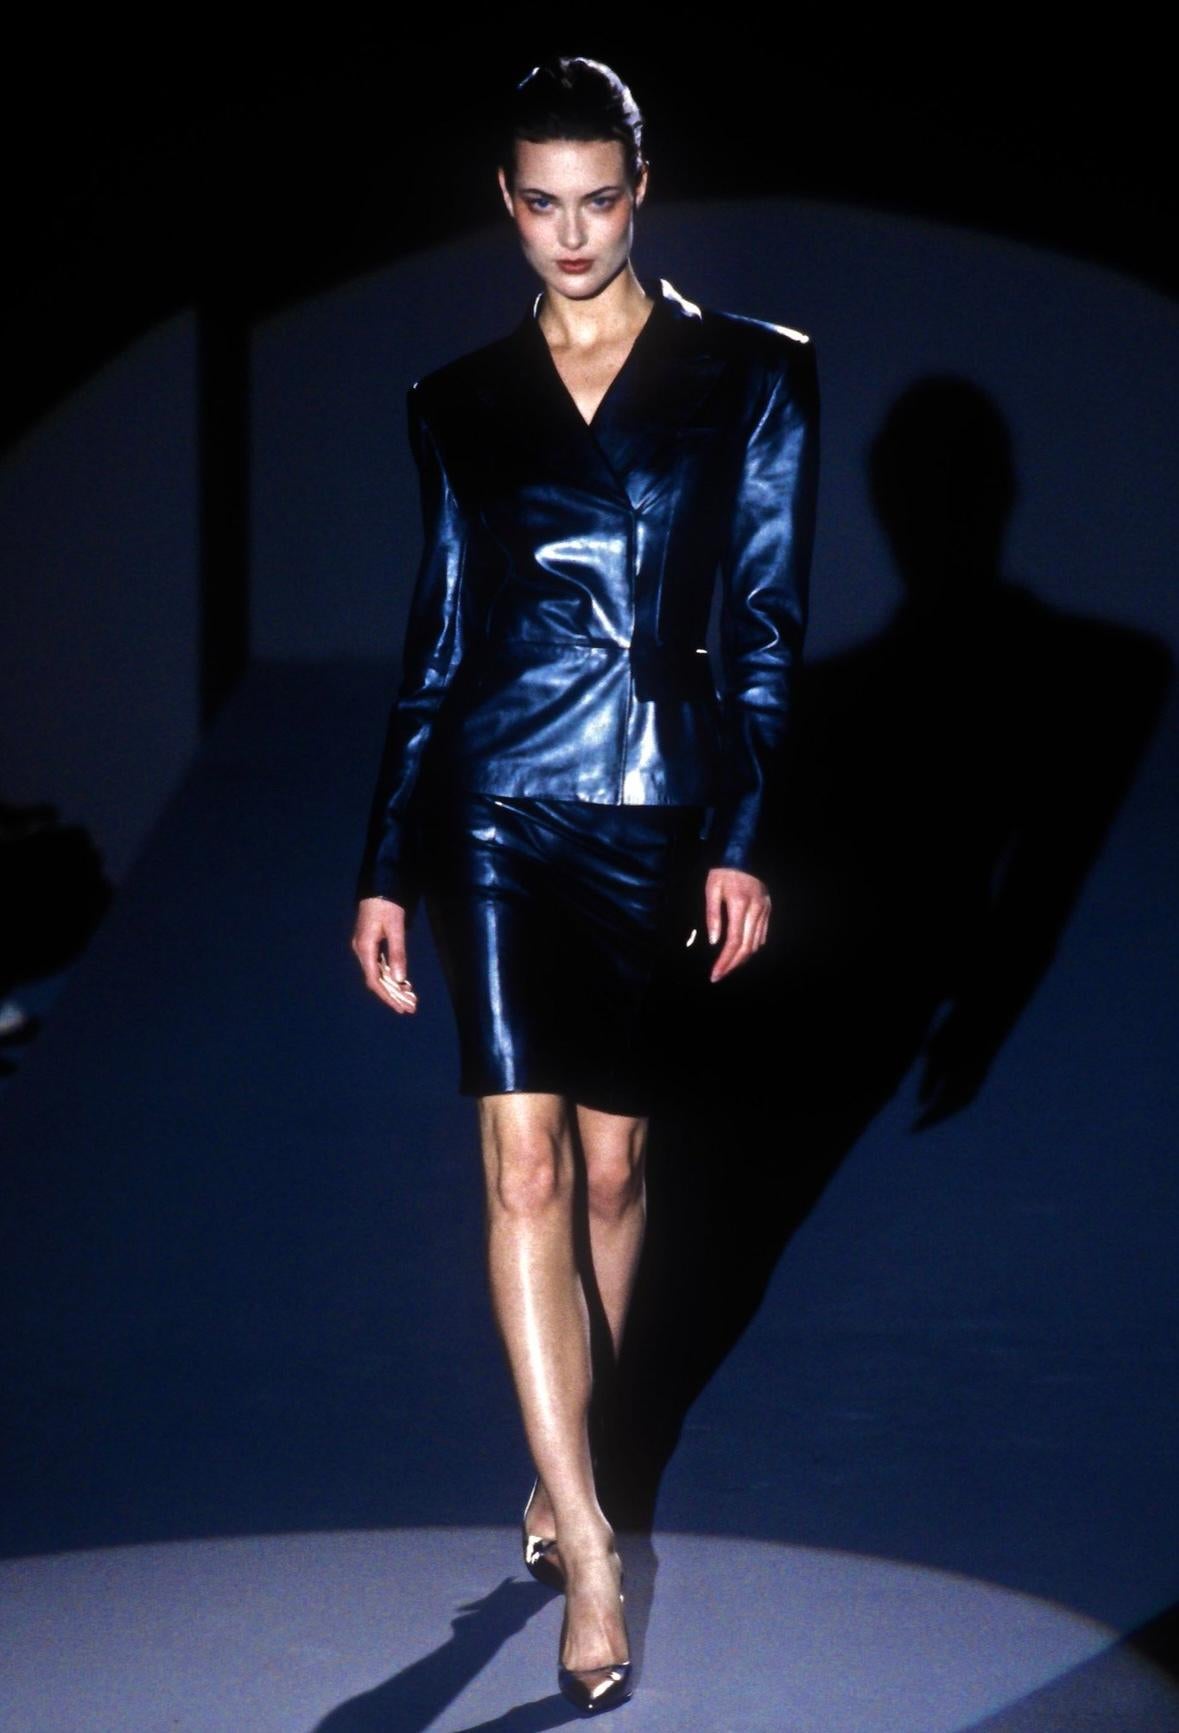 Ich präsentiere eine fabelhafte Gucci Jacke aus schwarzem Metallic-Leder, entworfen von Tom Ford. Diese atemberaubende Jacke aus der Herbst/Winter-Kollektion 1997 wurde erstmals auf dem Laufsteg der Saison gezeigt. Diese Jacke im Blazer-Stil hat